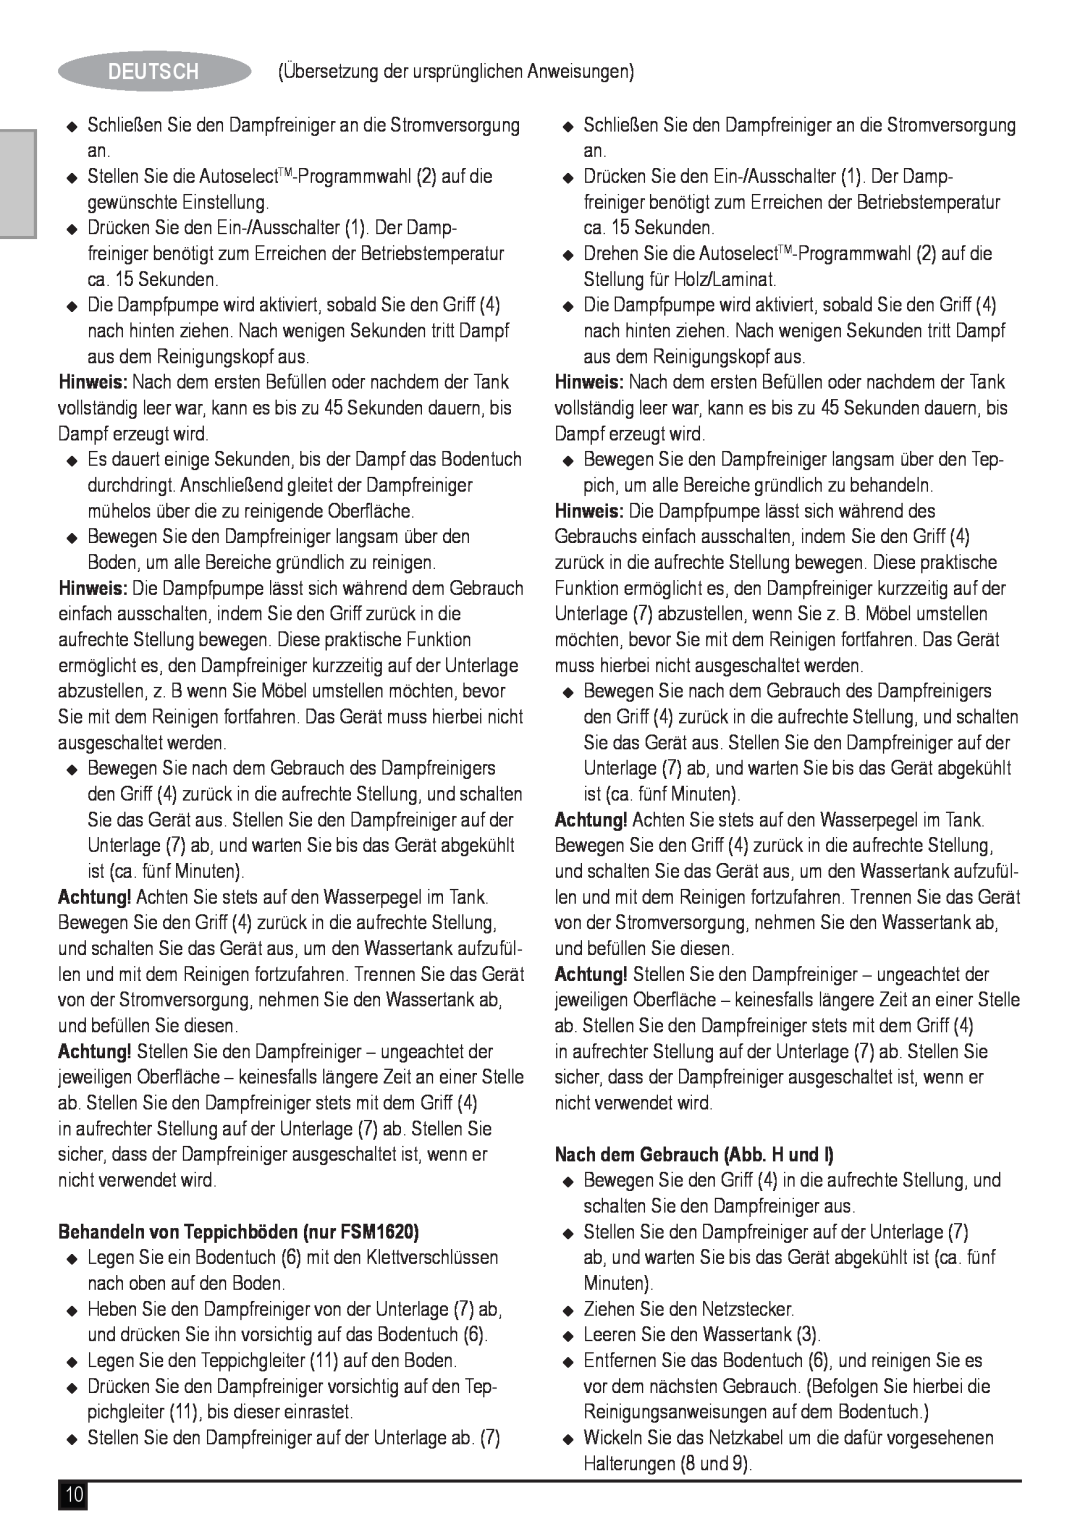 Black & Decker manual Behandeln von Teppichböden nur FSM1620, Nach dem Gebrauch Abb. H und, Deutsch 